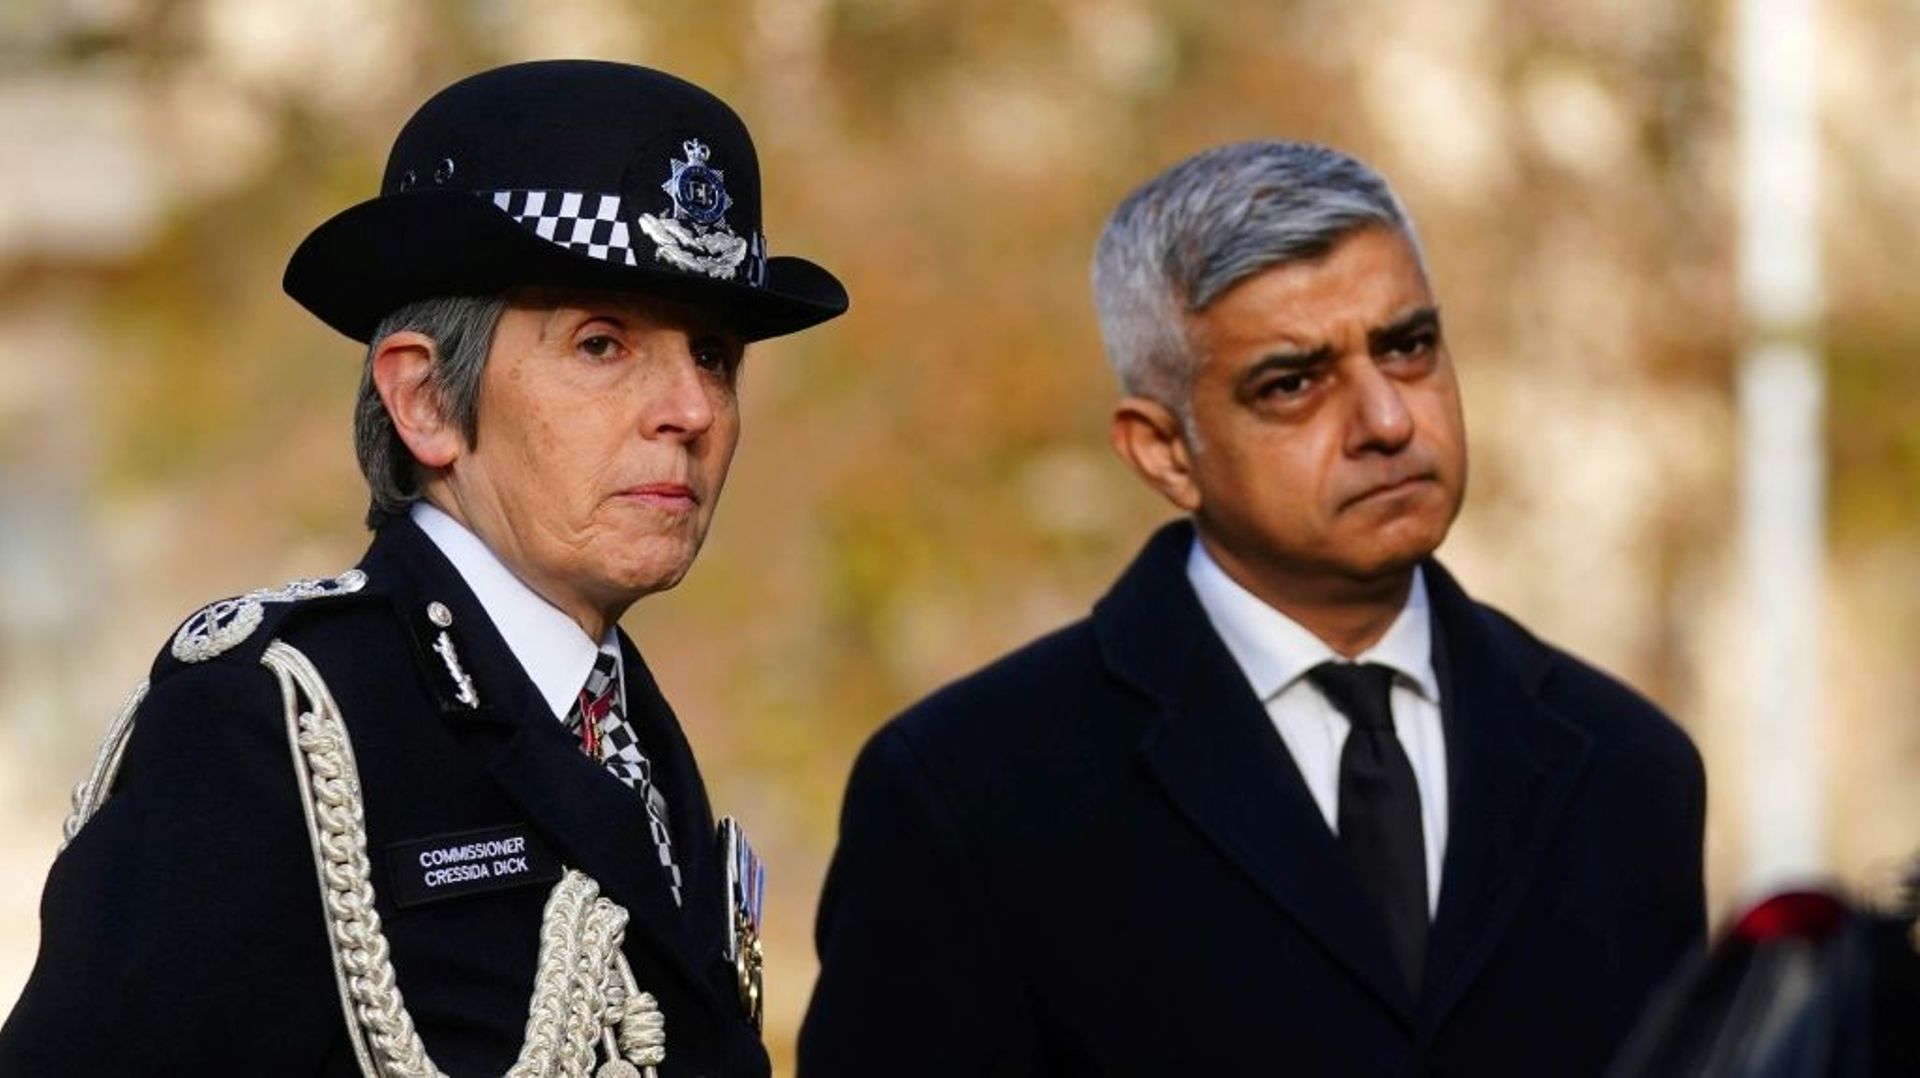 La cheffe de la police de Londres Cressida Dick (g) et le maire de la ville Sadiq Khan le 29 novembre 2021 à Londres